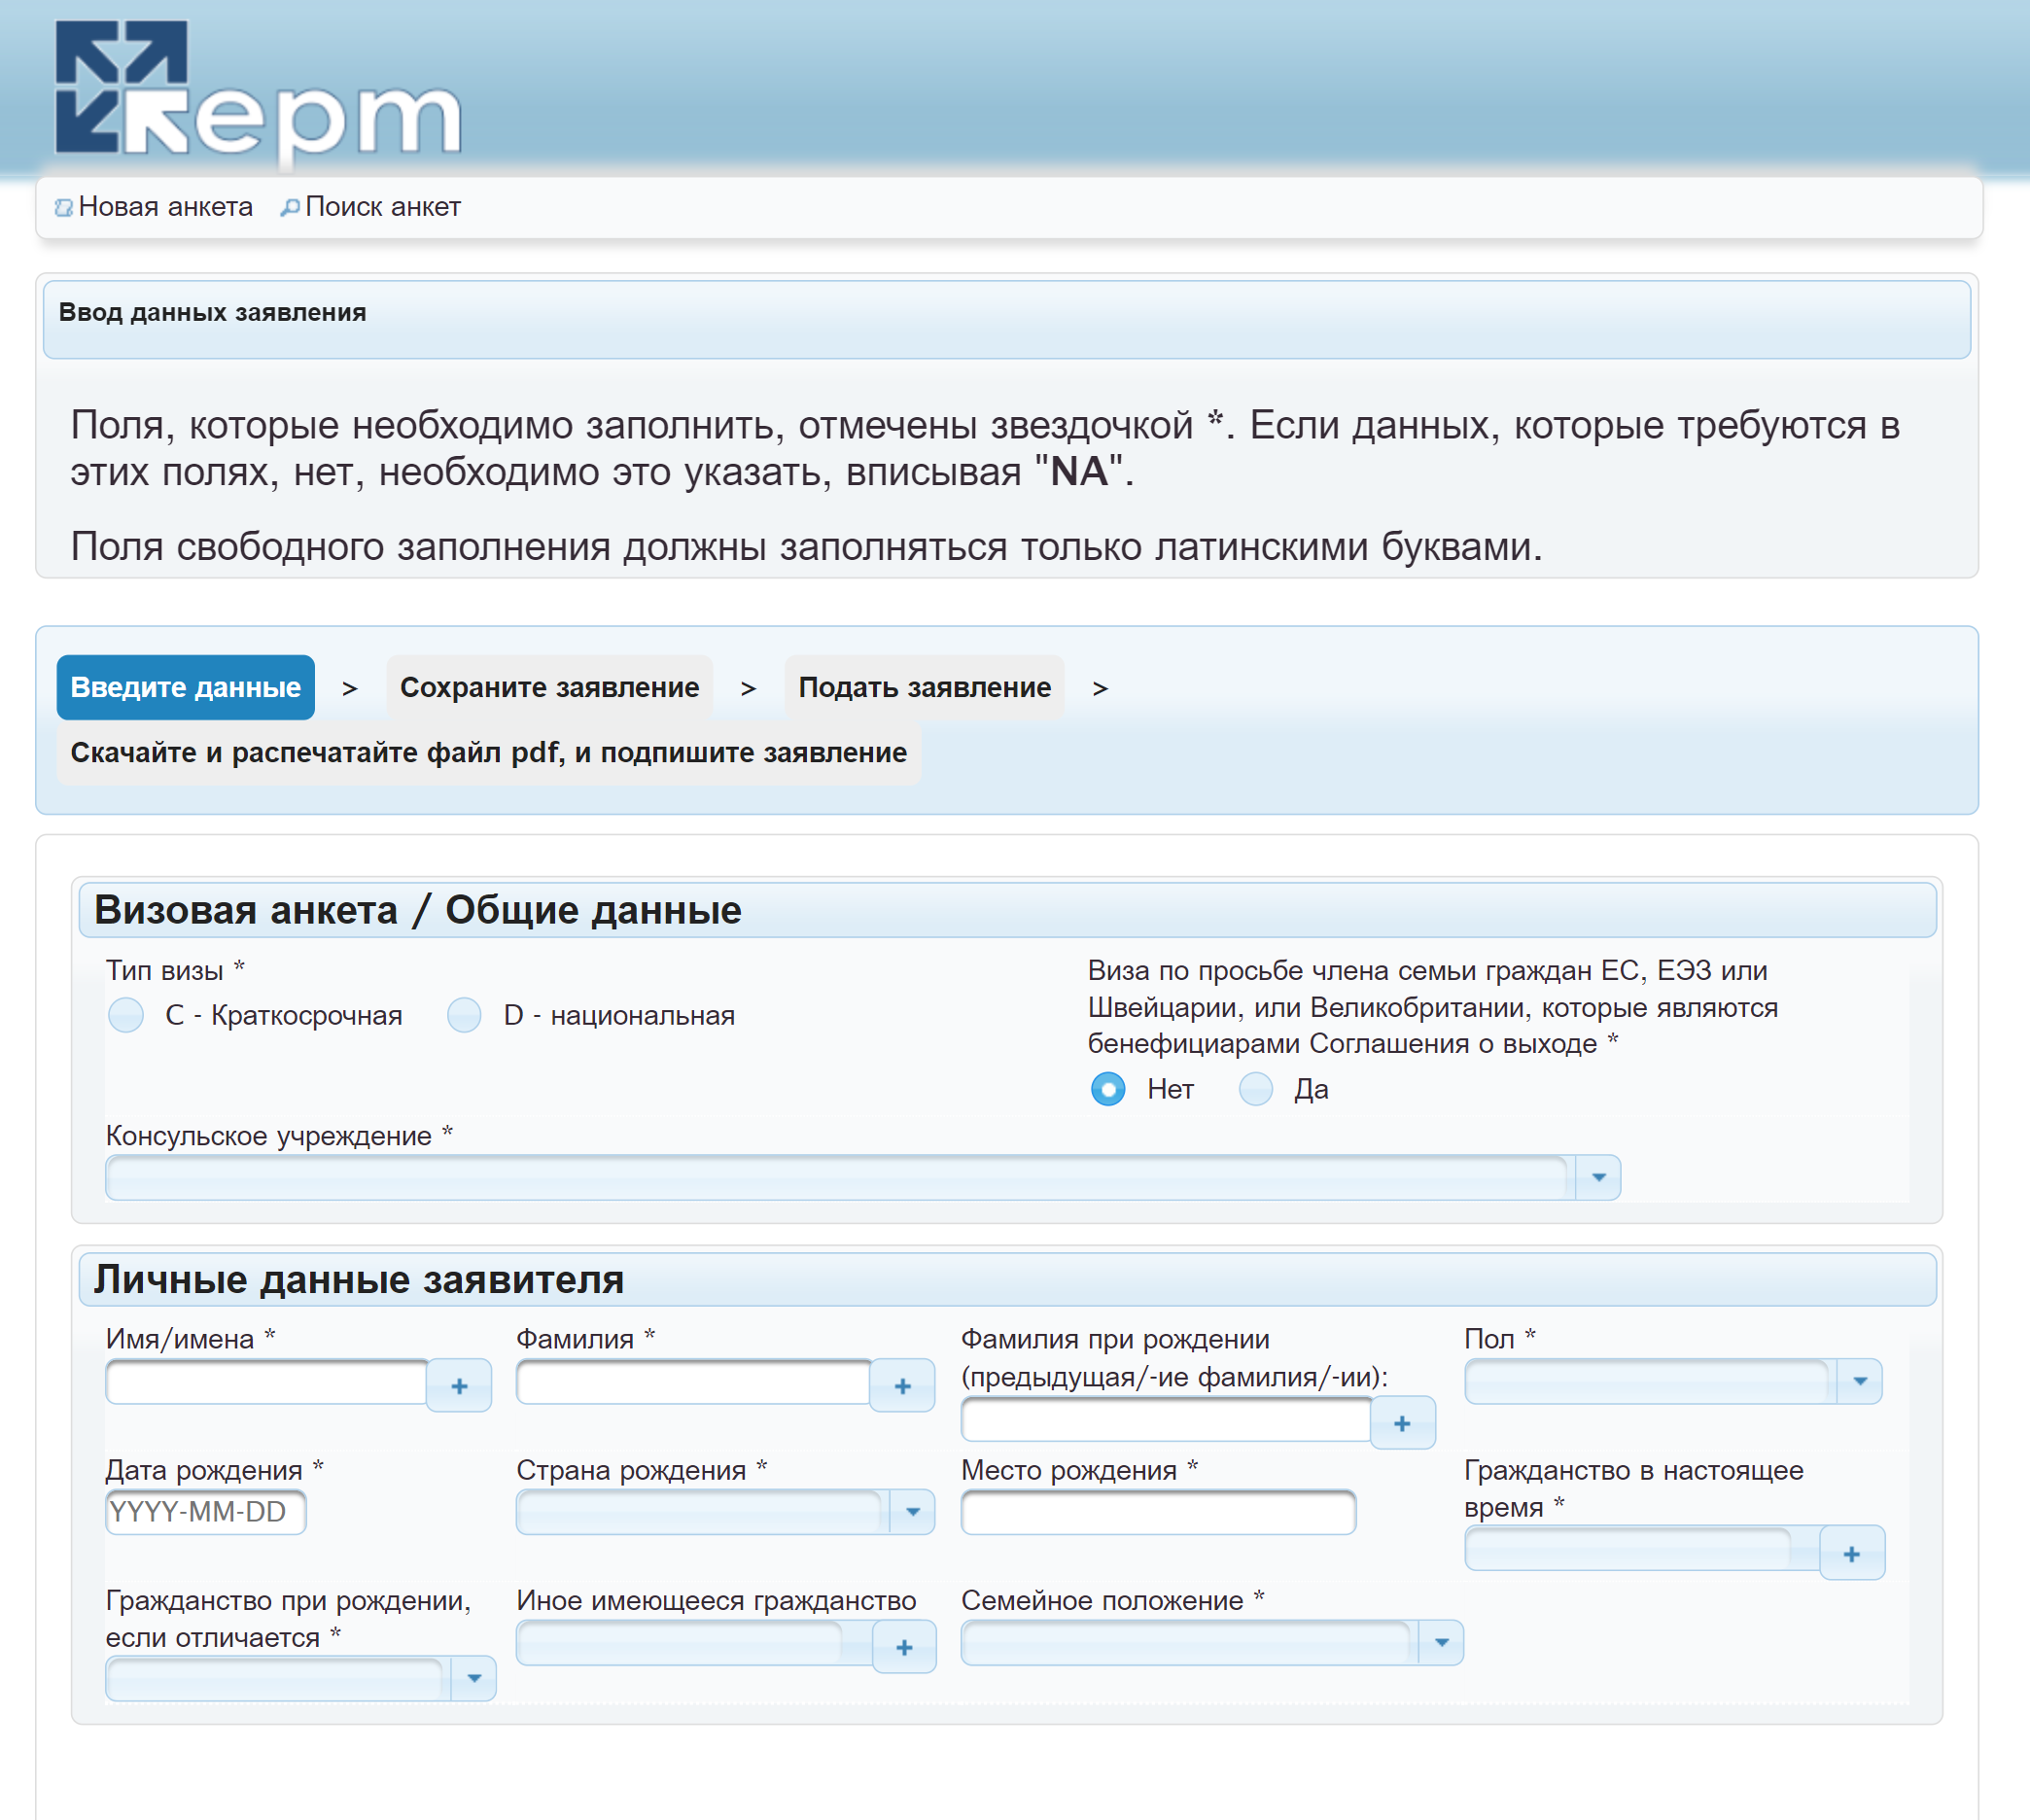 Анкета для получения литовского шенгена на русском языке. Источник: visa.vrm.lt